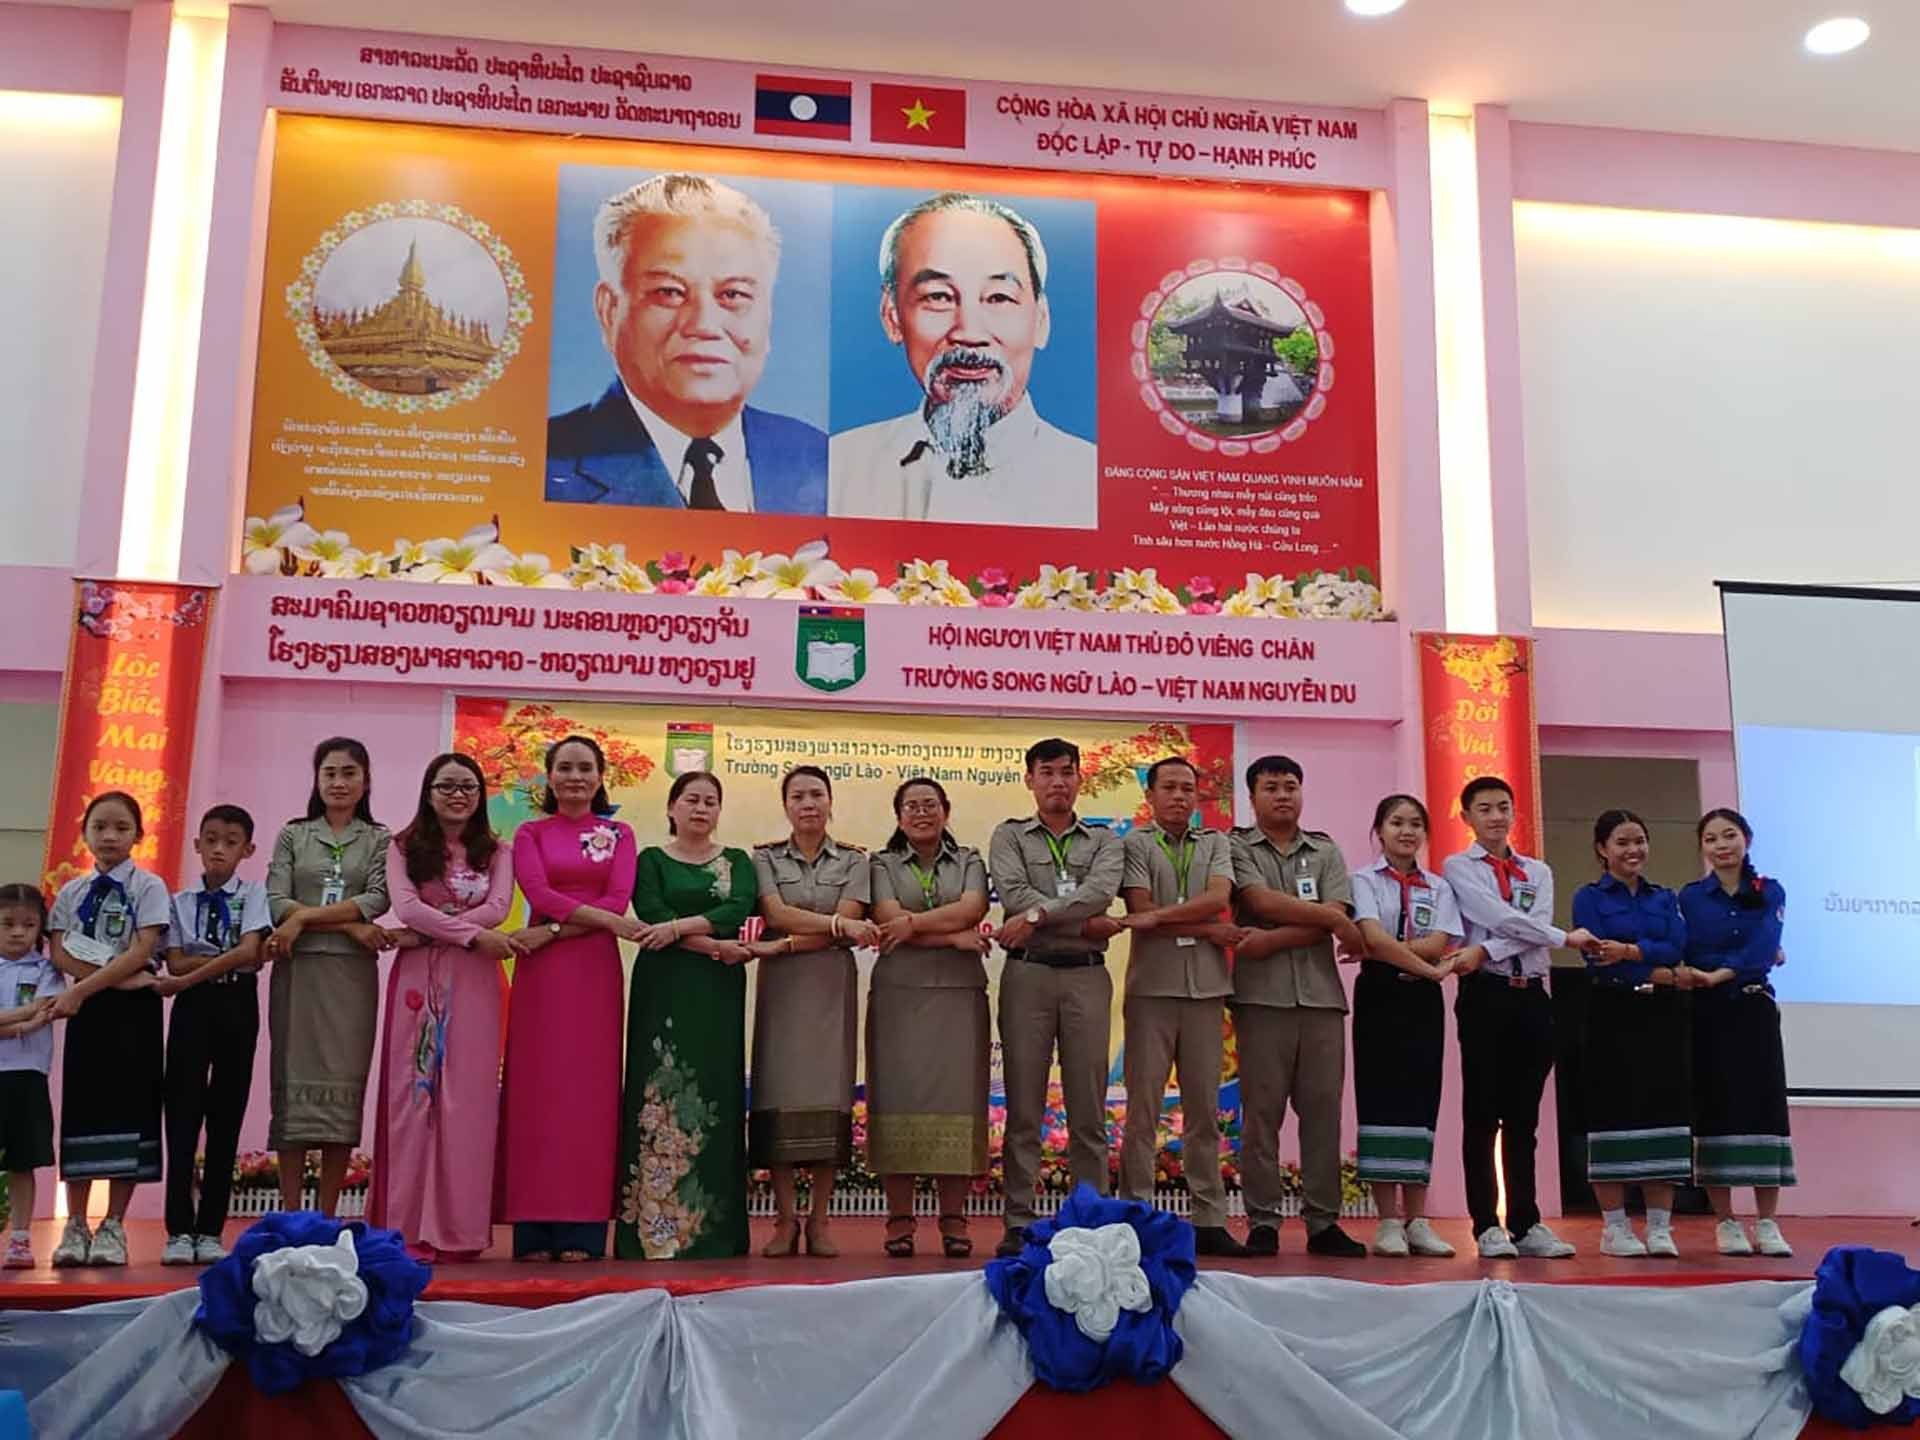 Giáo viên và học sinh Trường song ngữ Lào-Việt Nam Nguyễn Du chụp ảnh trong ngày khai giảng năm học mới. (Nguồn: Nhà trường cung cấp)